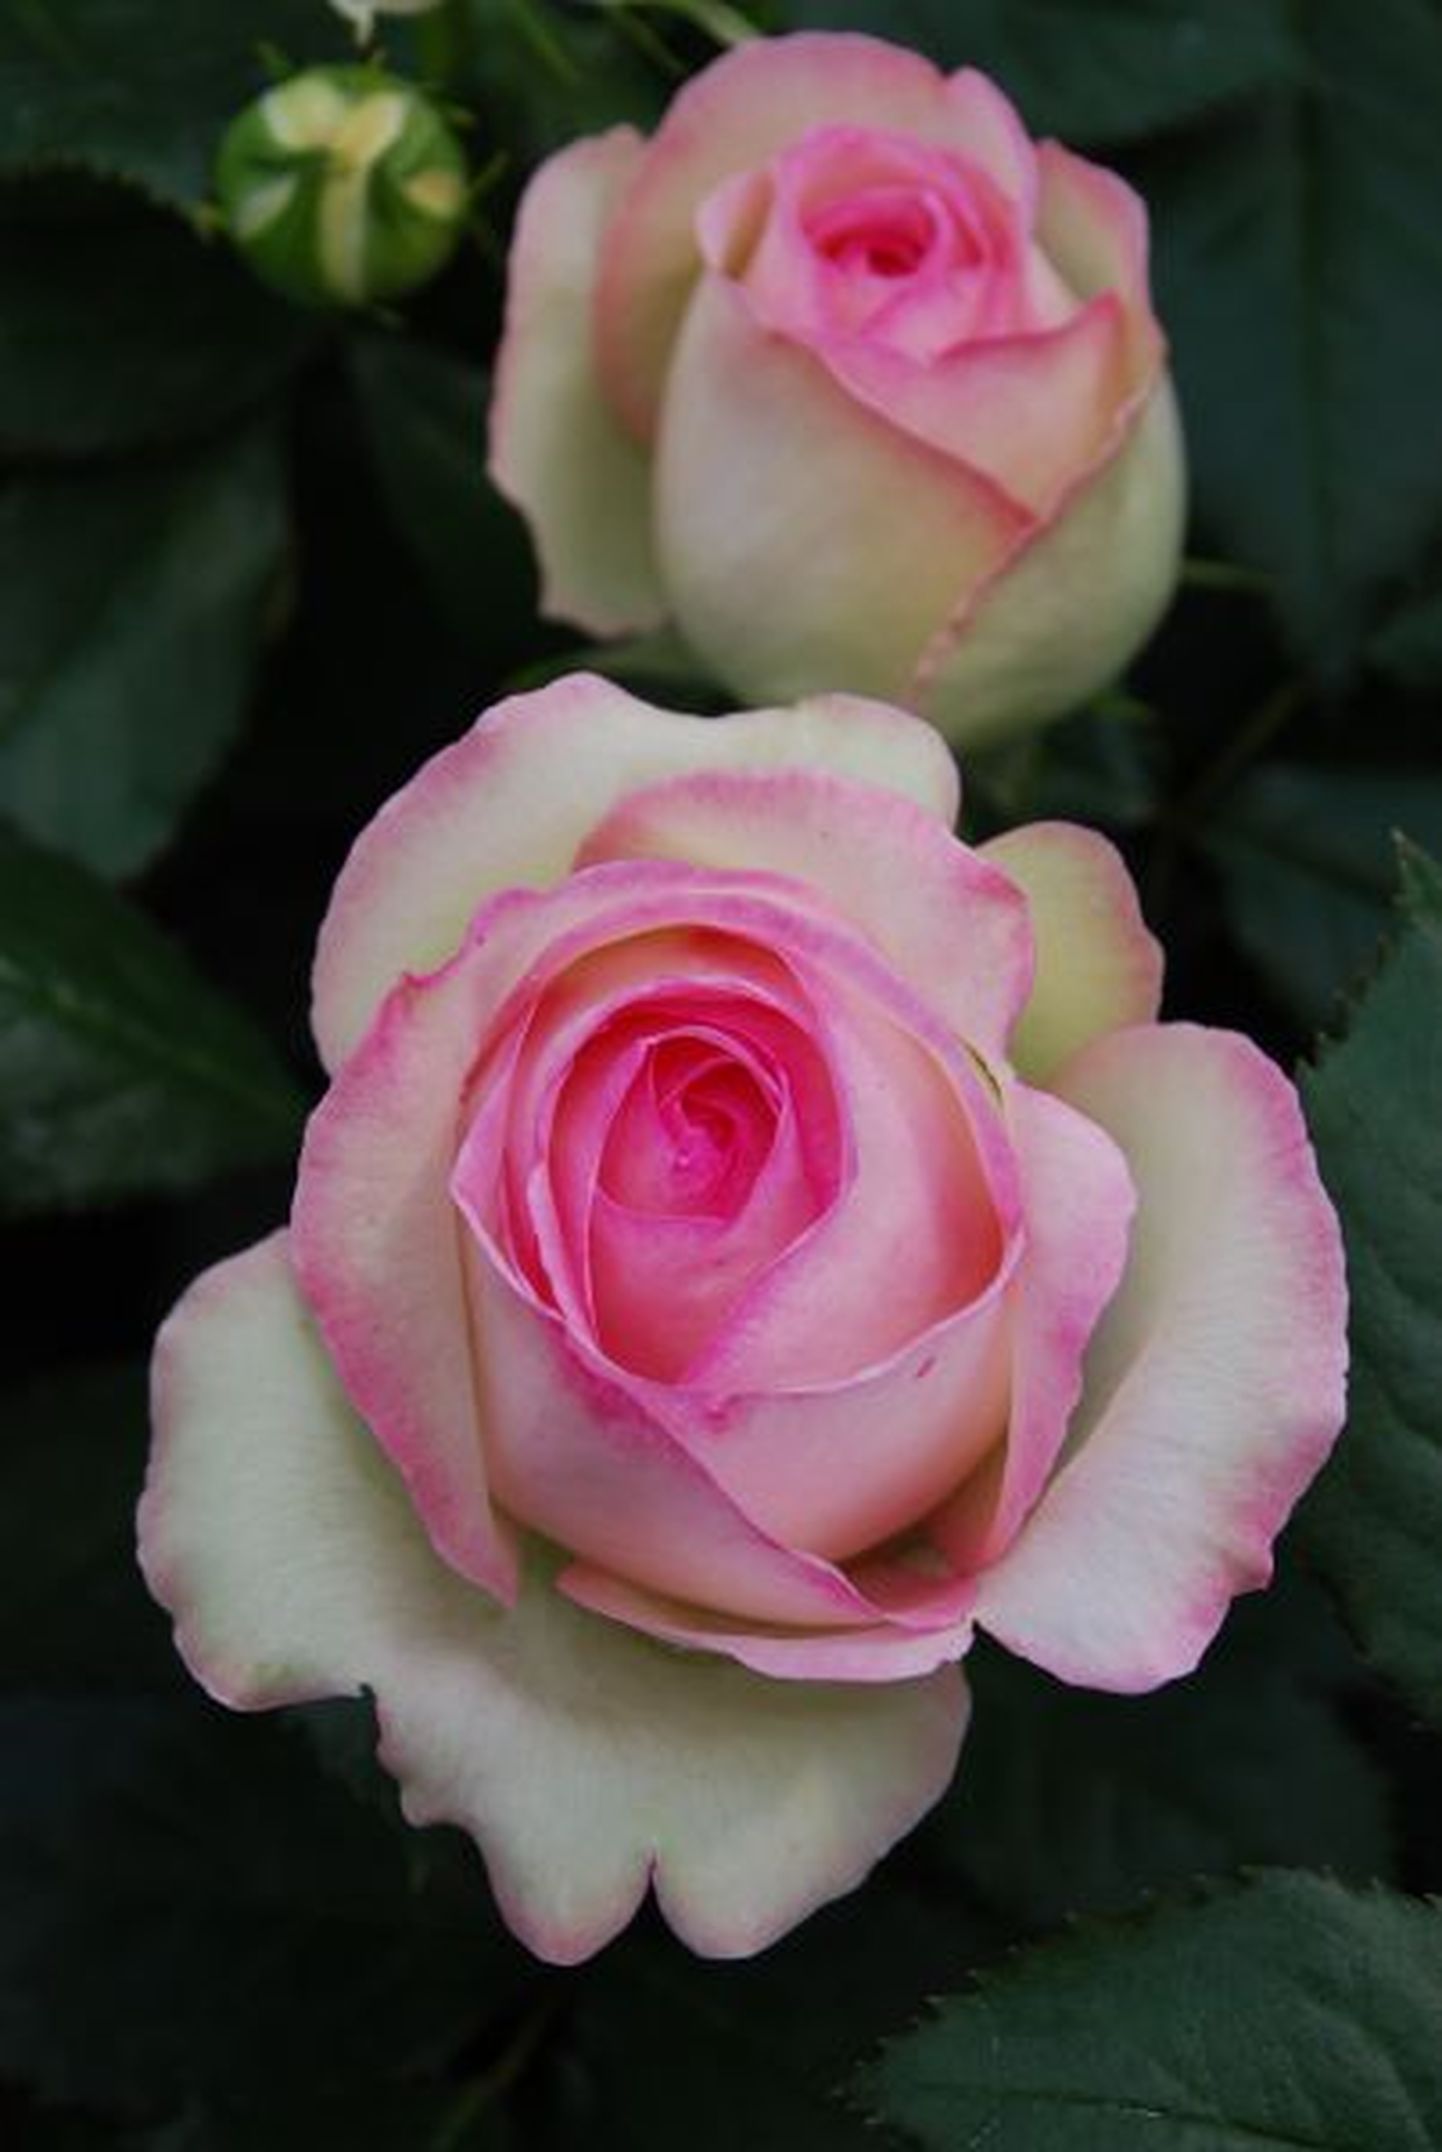 Uus-antiikroos: «Eden Rose 85®» - suurte munajate õitega, väga kaunis roos. Õied seest roosad, äärtelt heleroosad. Väga hea talve ja hea haiguskindlusega sort. Tunnistati 2006. aastal 36 maailma roosiorganisatsiooni poolt Maailmaroosi tiitliga.